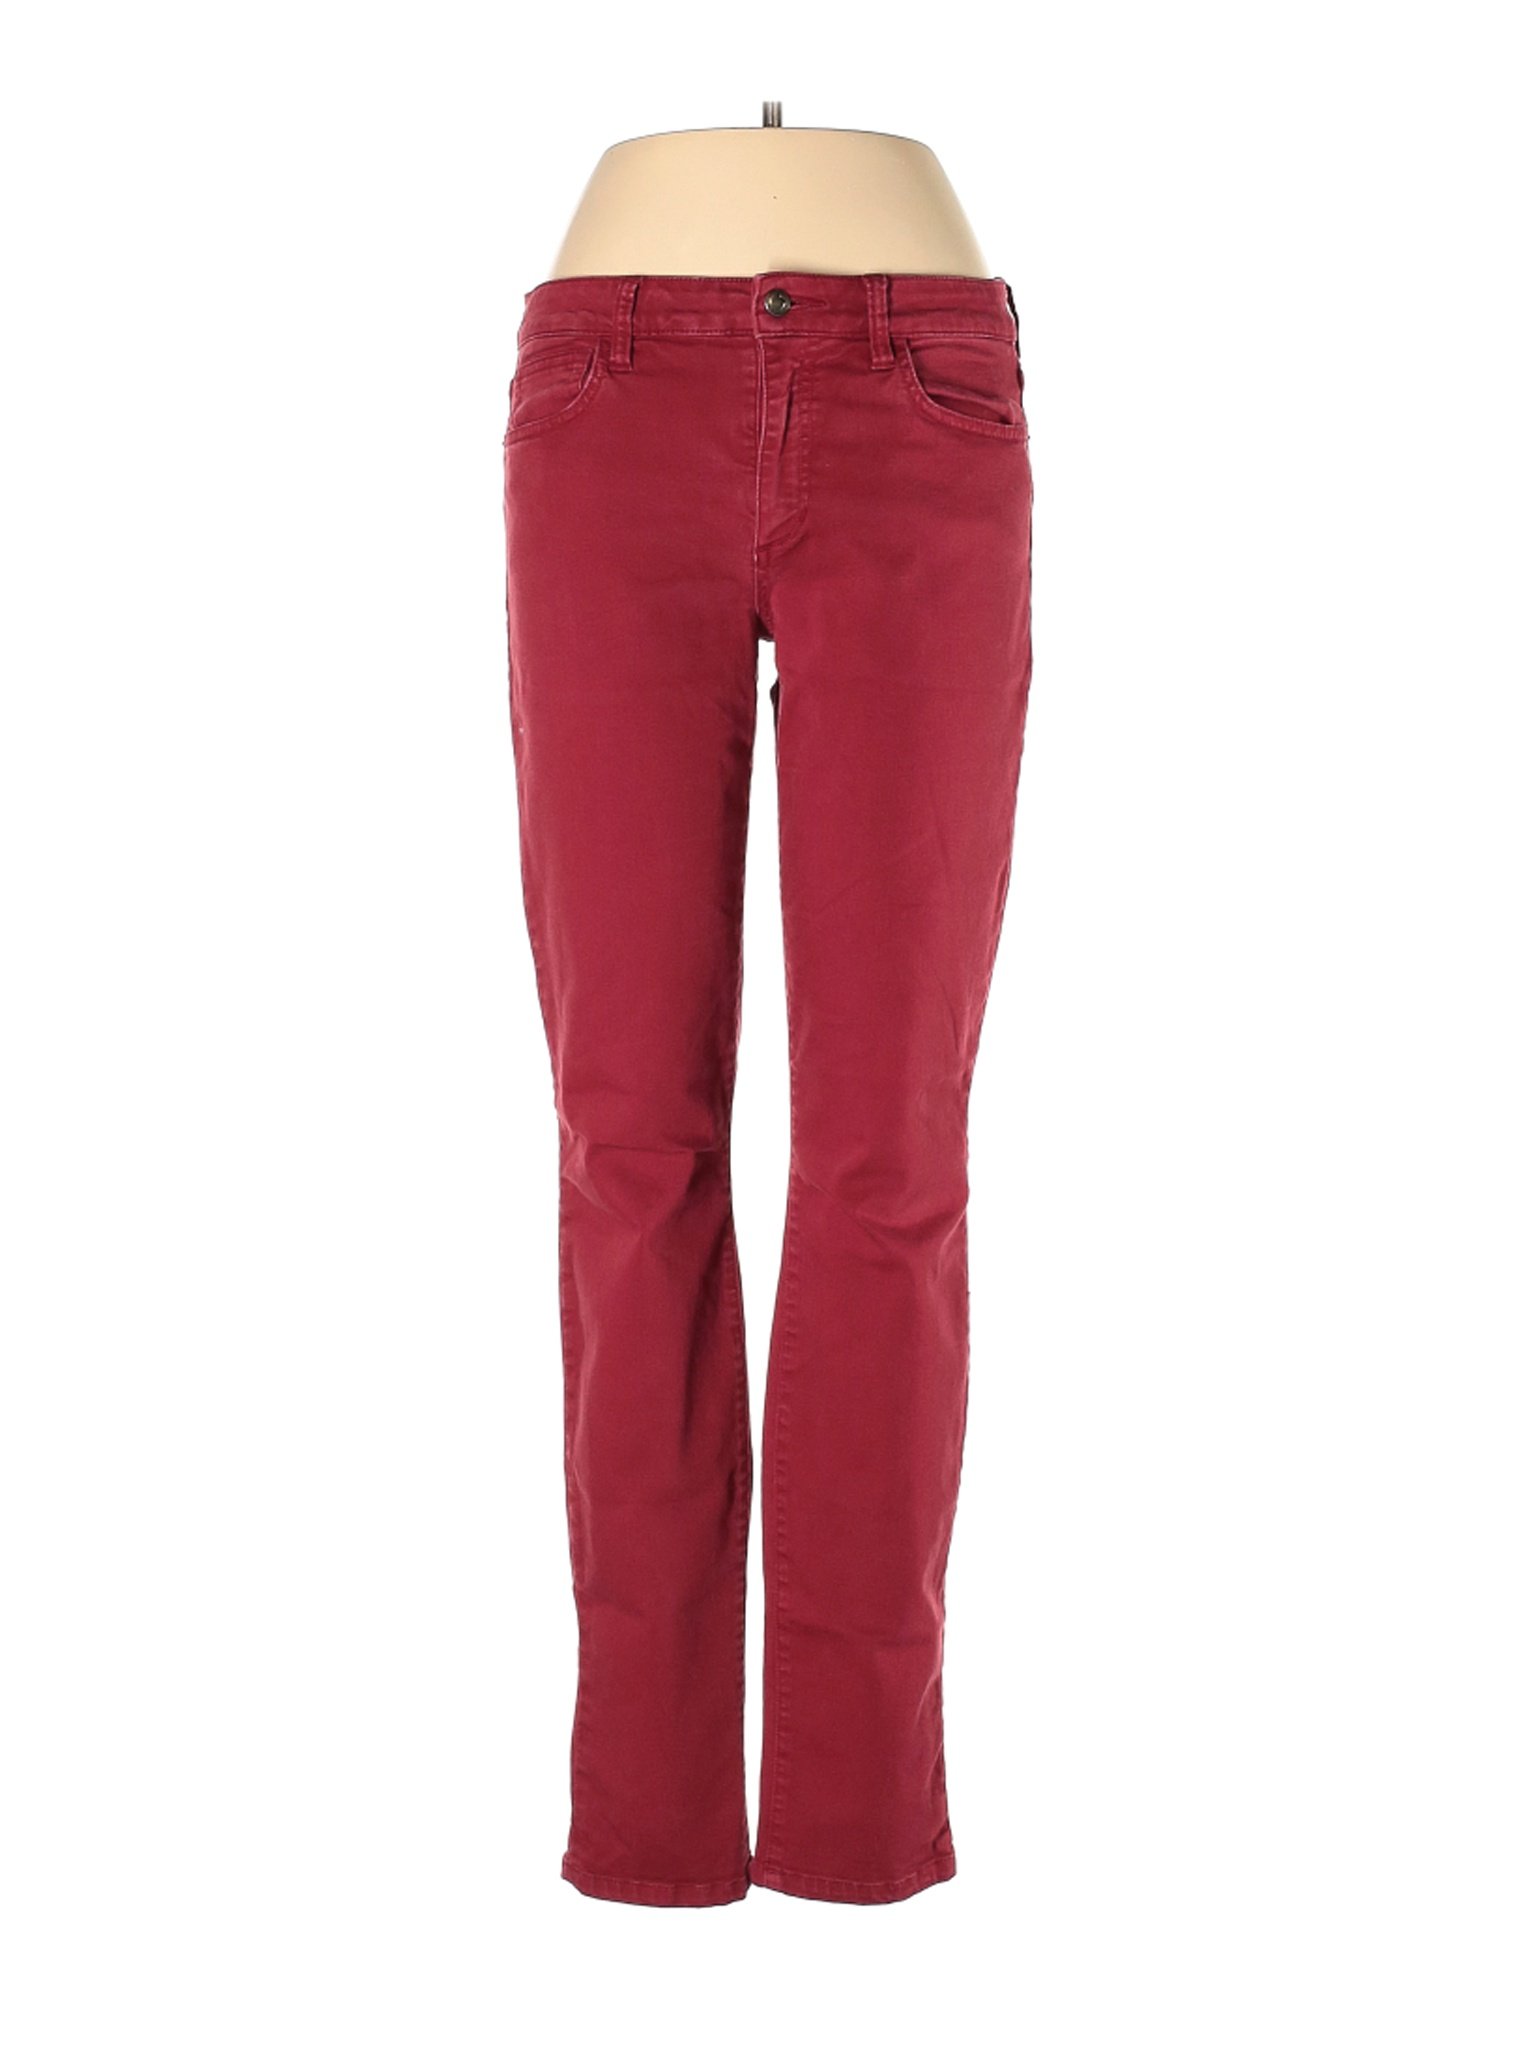 Joe's Jeans Women Red Jeans 30W | eBay